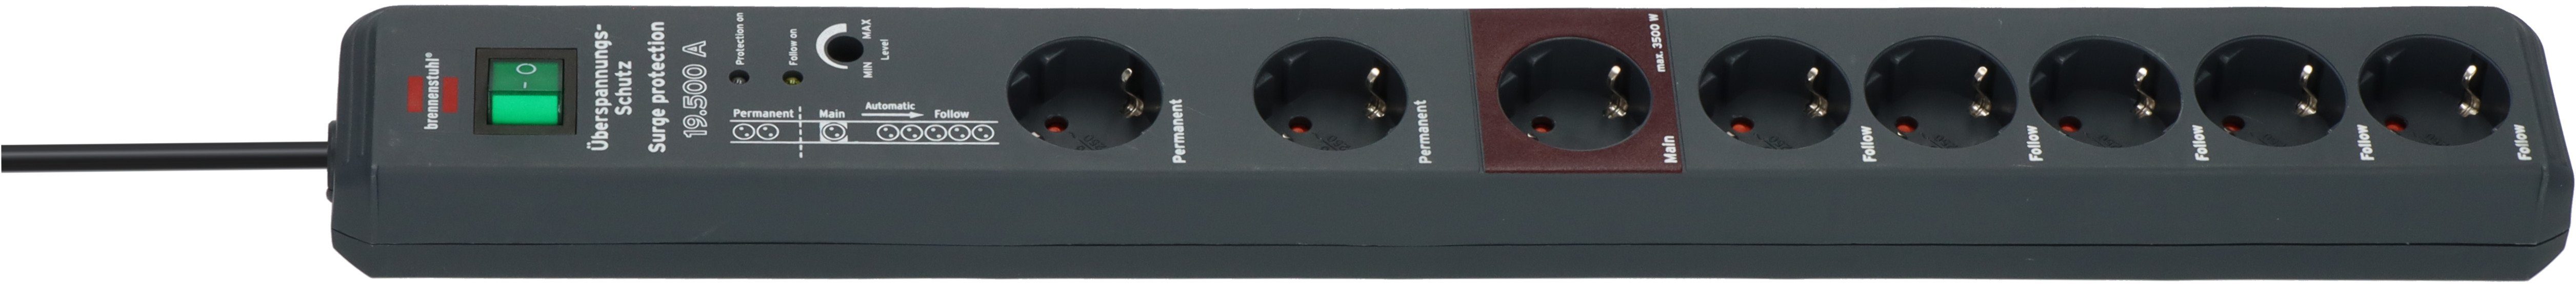 Funktion Schalter Follow Secure-Tec Brennenstuhl mit m), Main Überspannungsschutz, Steckdosenleiste und 8-fach (Kabellänge 3